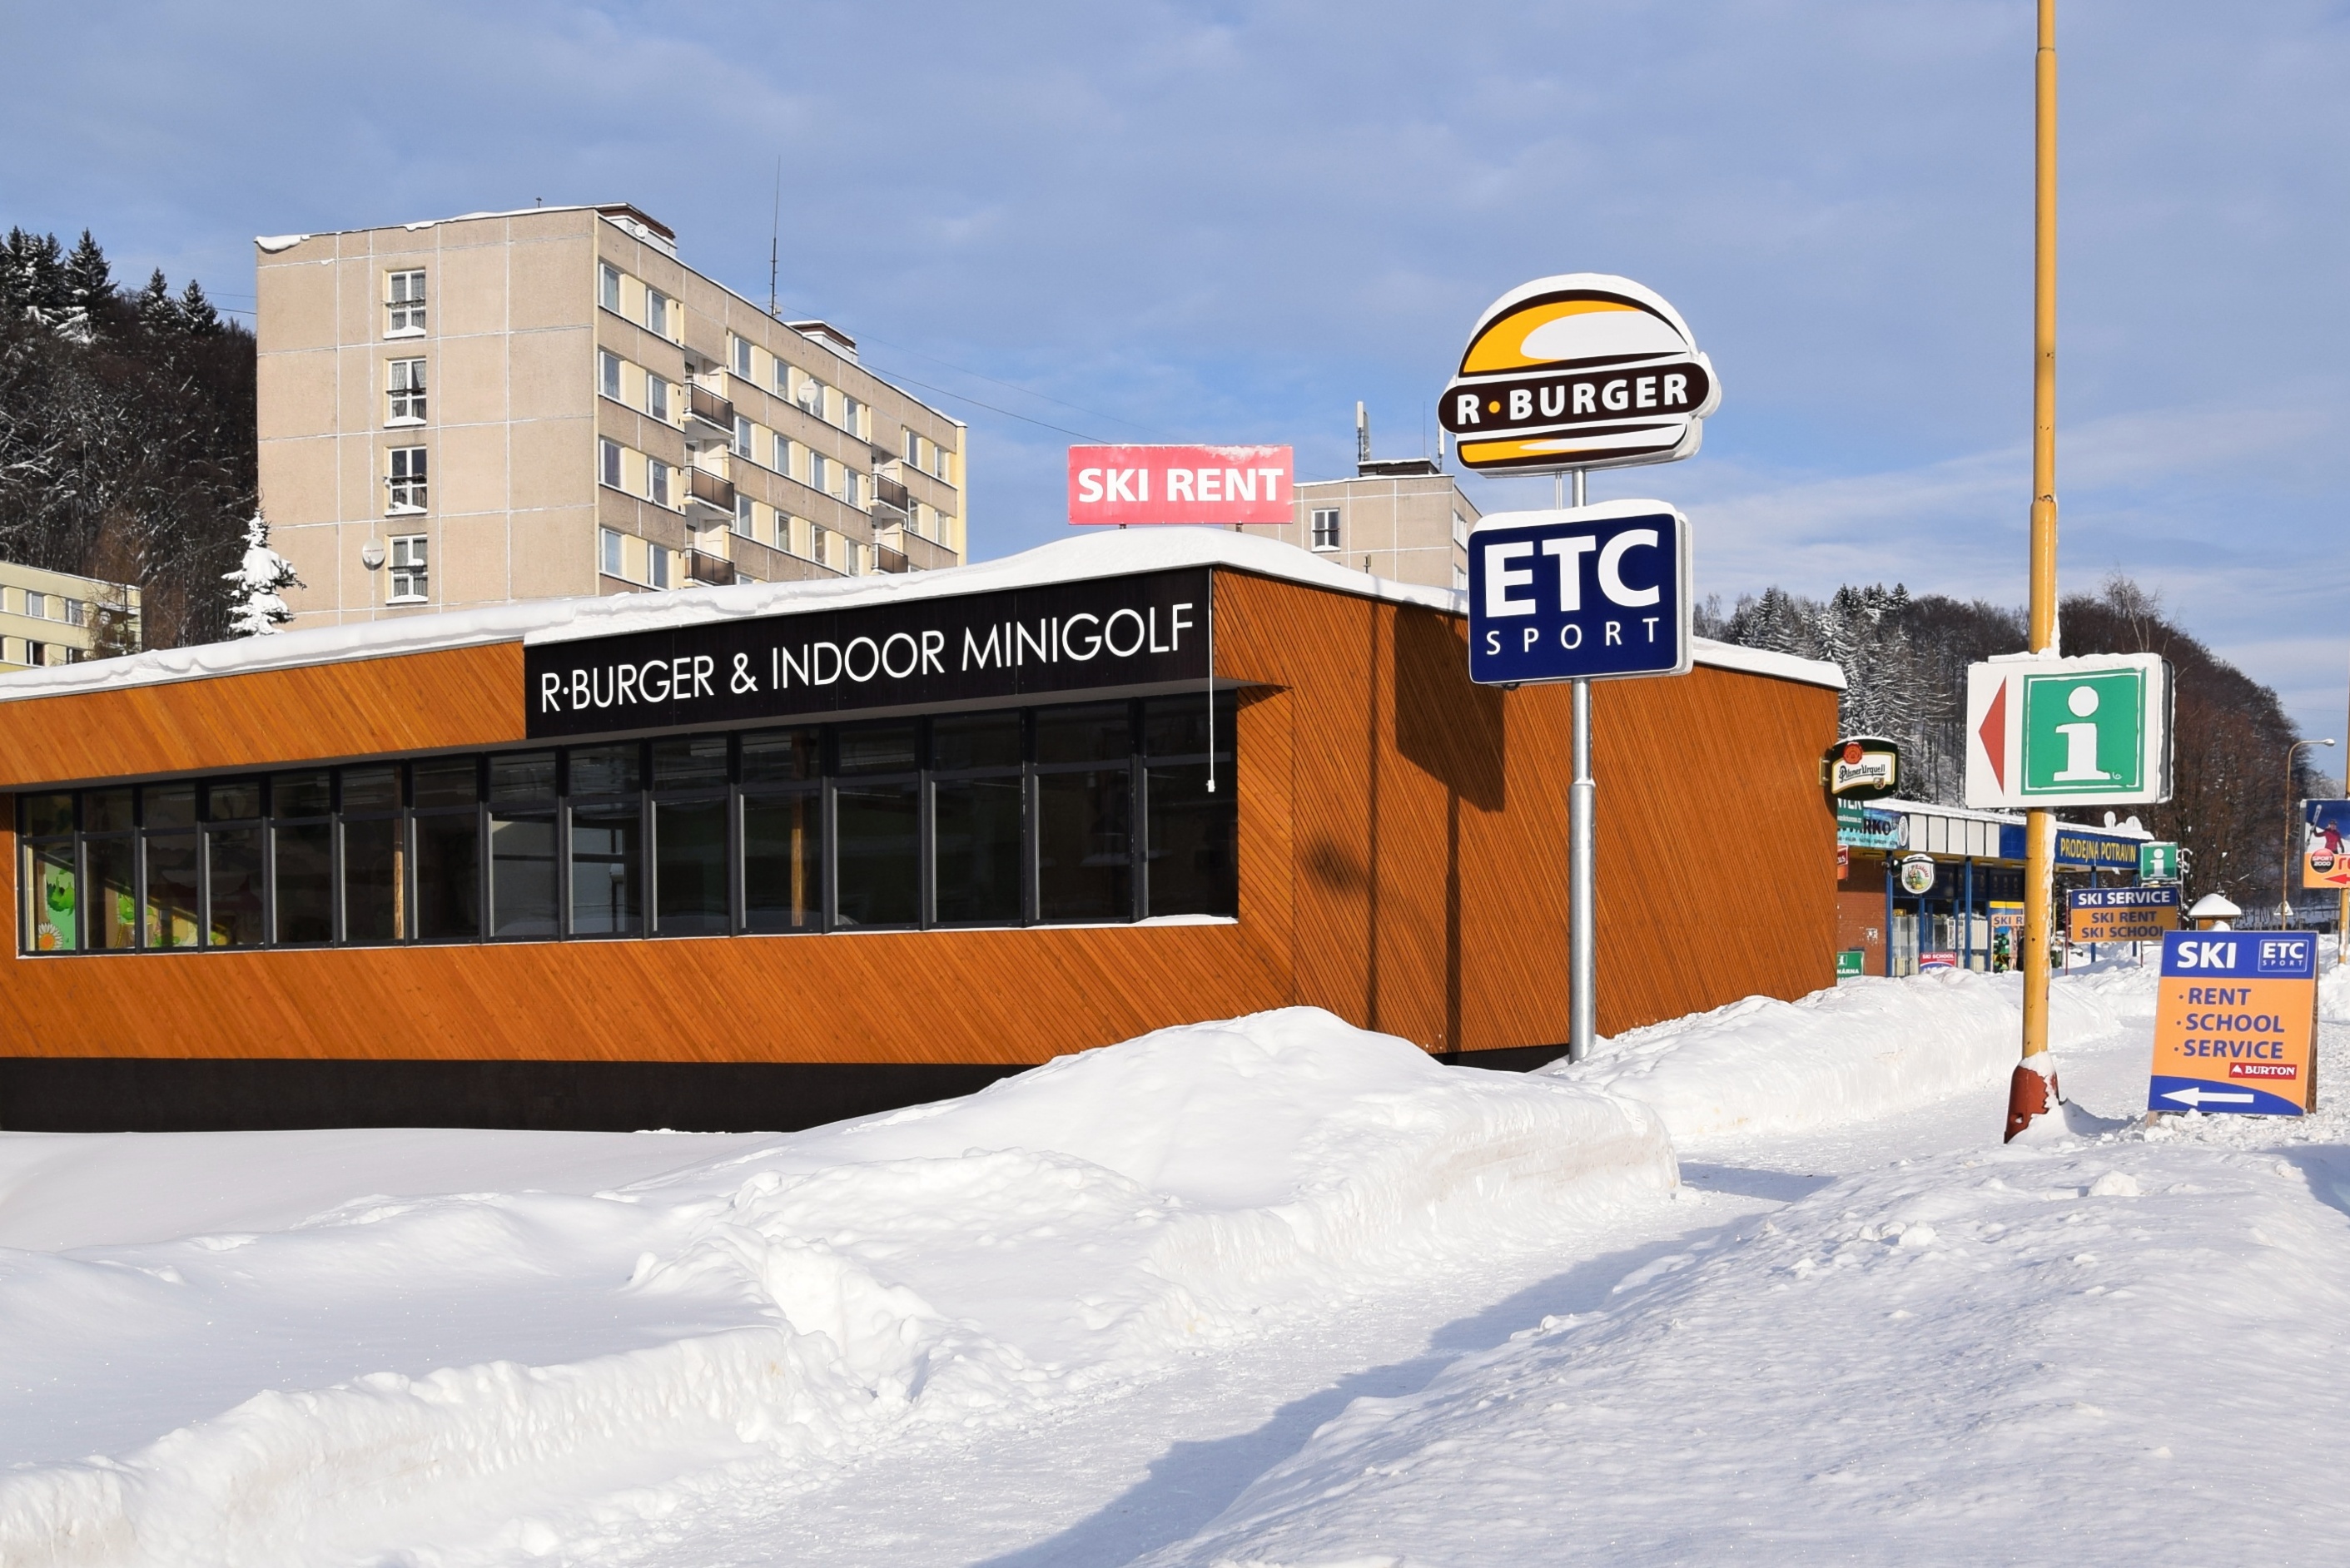 ETC5 - Rýchorka – půjčovna lyží a snowboardů, skiservis, lyžařská škola, hlídání dětí